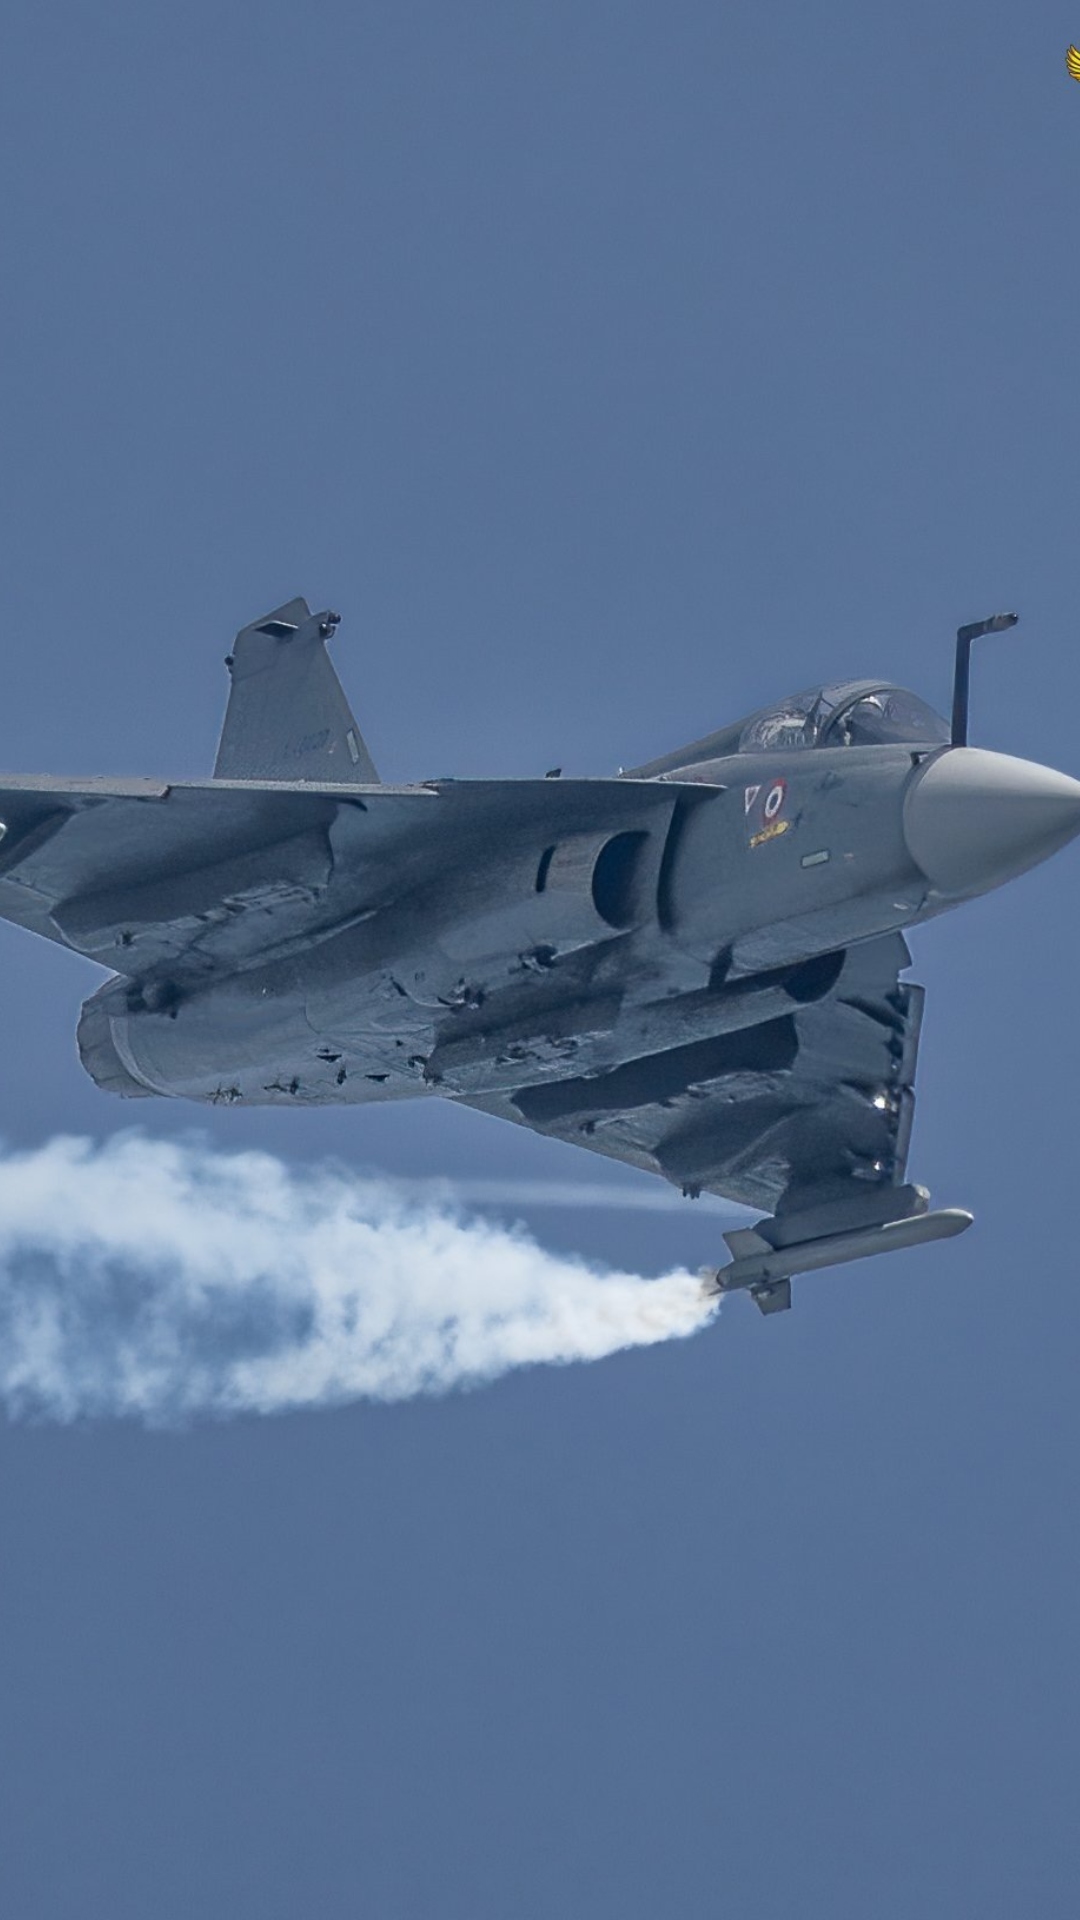 भारत का तेजस लड़ाकू विमान कितना ताकतवर है?